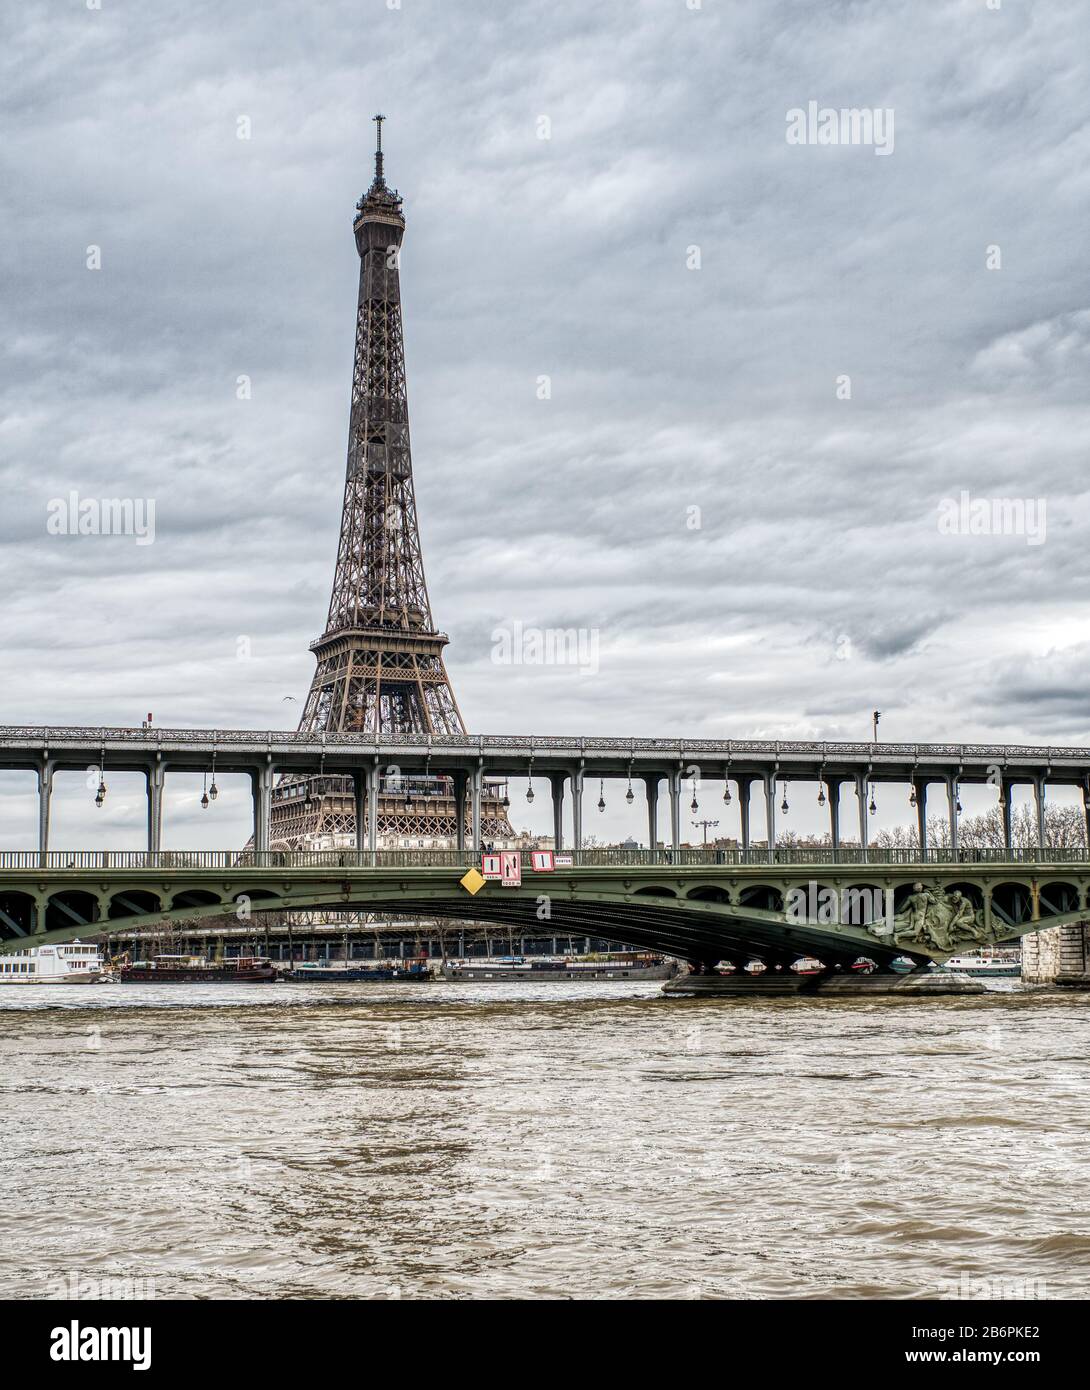 La Tour Eiffel en journée nuageux - Paris, France Banque D'Images